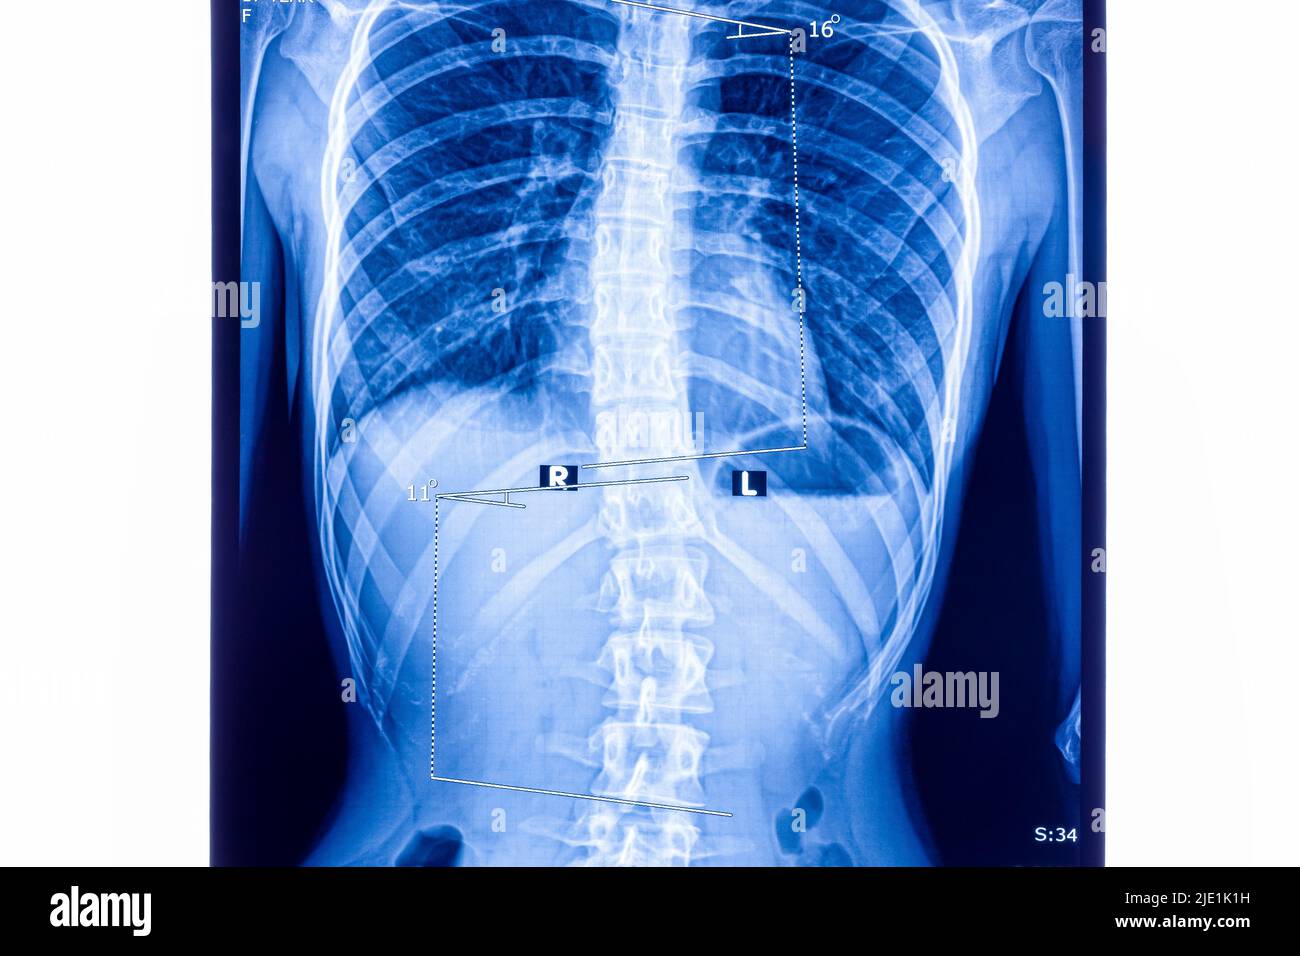 Röntgenaufnahme mit Skoliose der Lendenwirbelsäule. Skoliose ist eine abnorme laterale Krümmung der Wirbelsäule. Vergrößern. Stockfoto